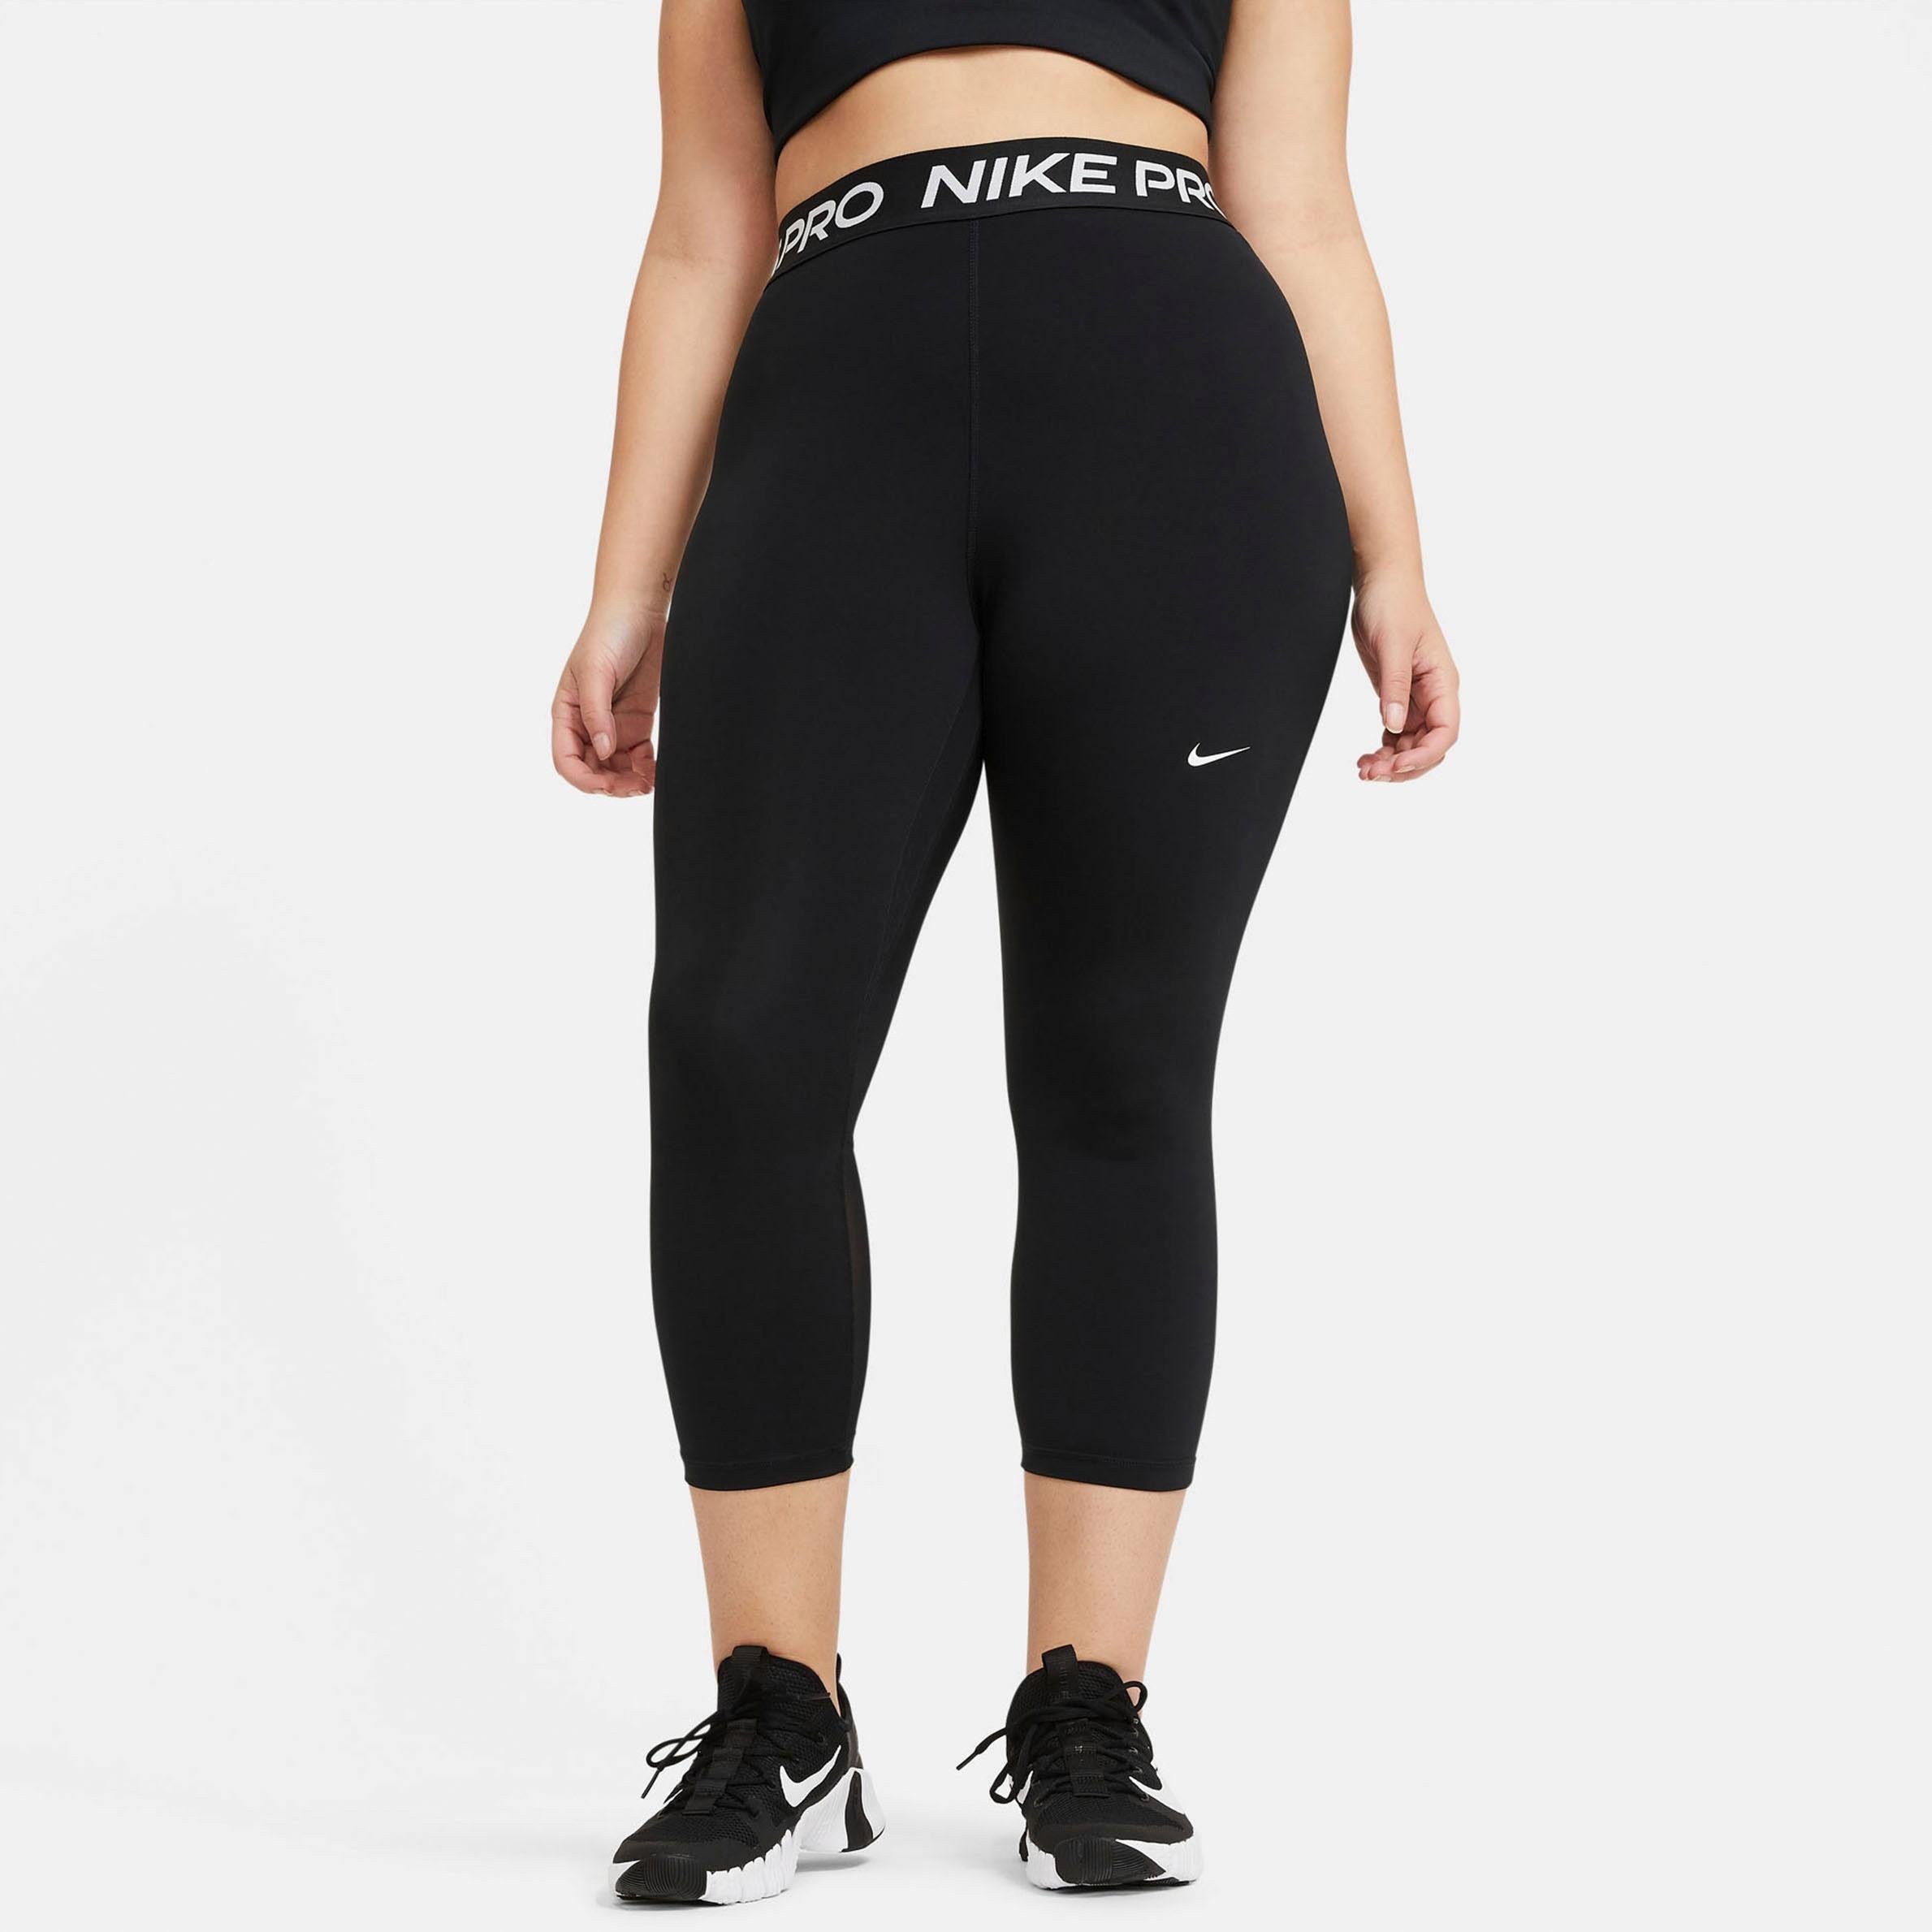 Magnetisch Deens uitvinding Nike Fitness broek dames online kopen | Shop nu | OTTO